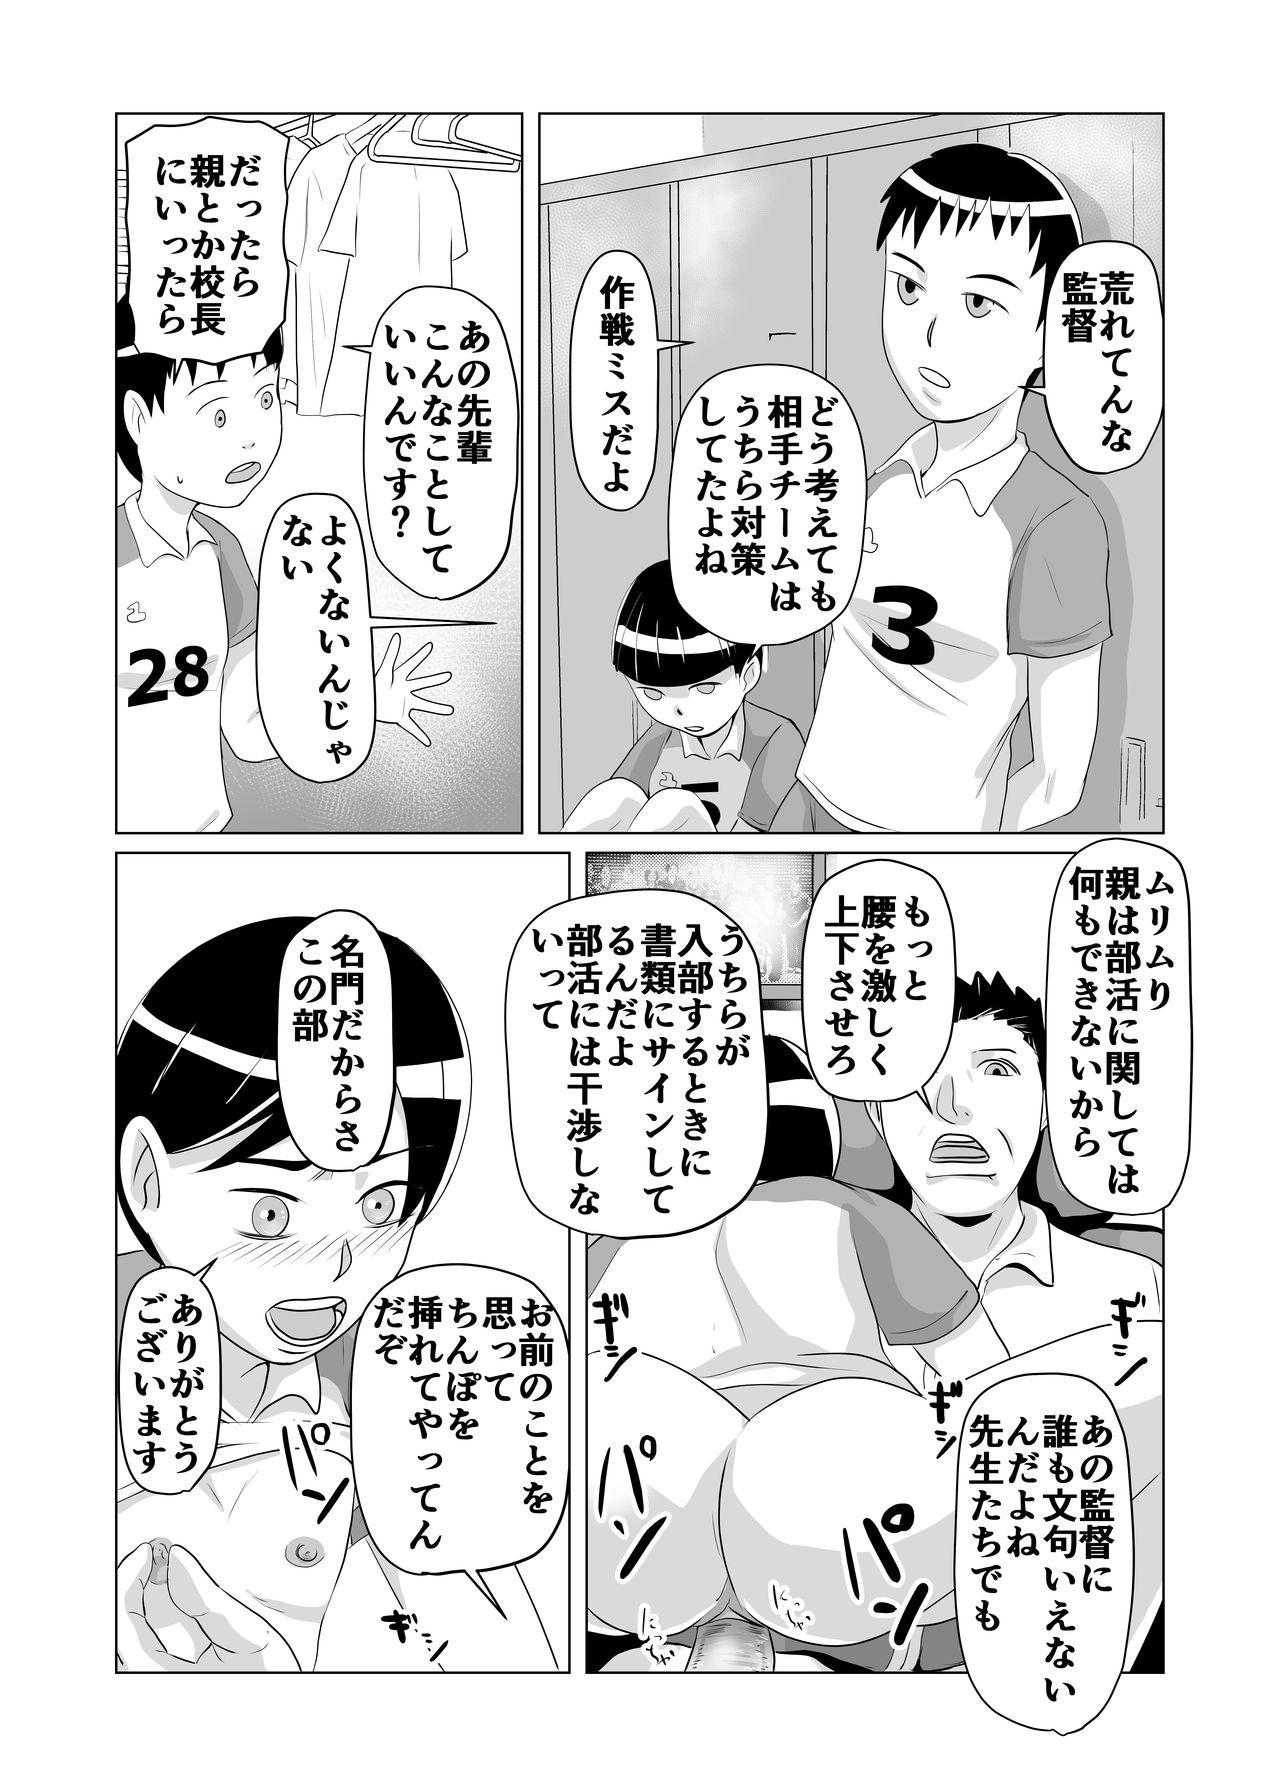 Bukatsudou Seiteki Gyakutai Inpei Manga 8